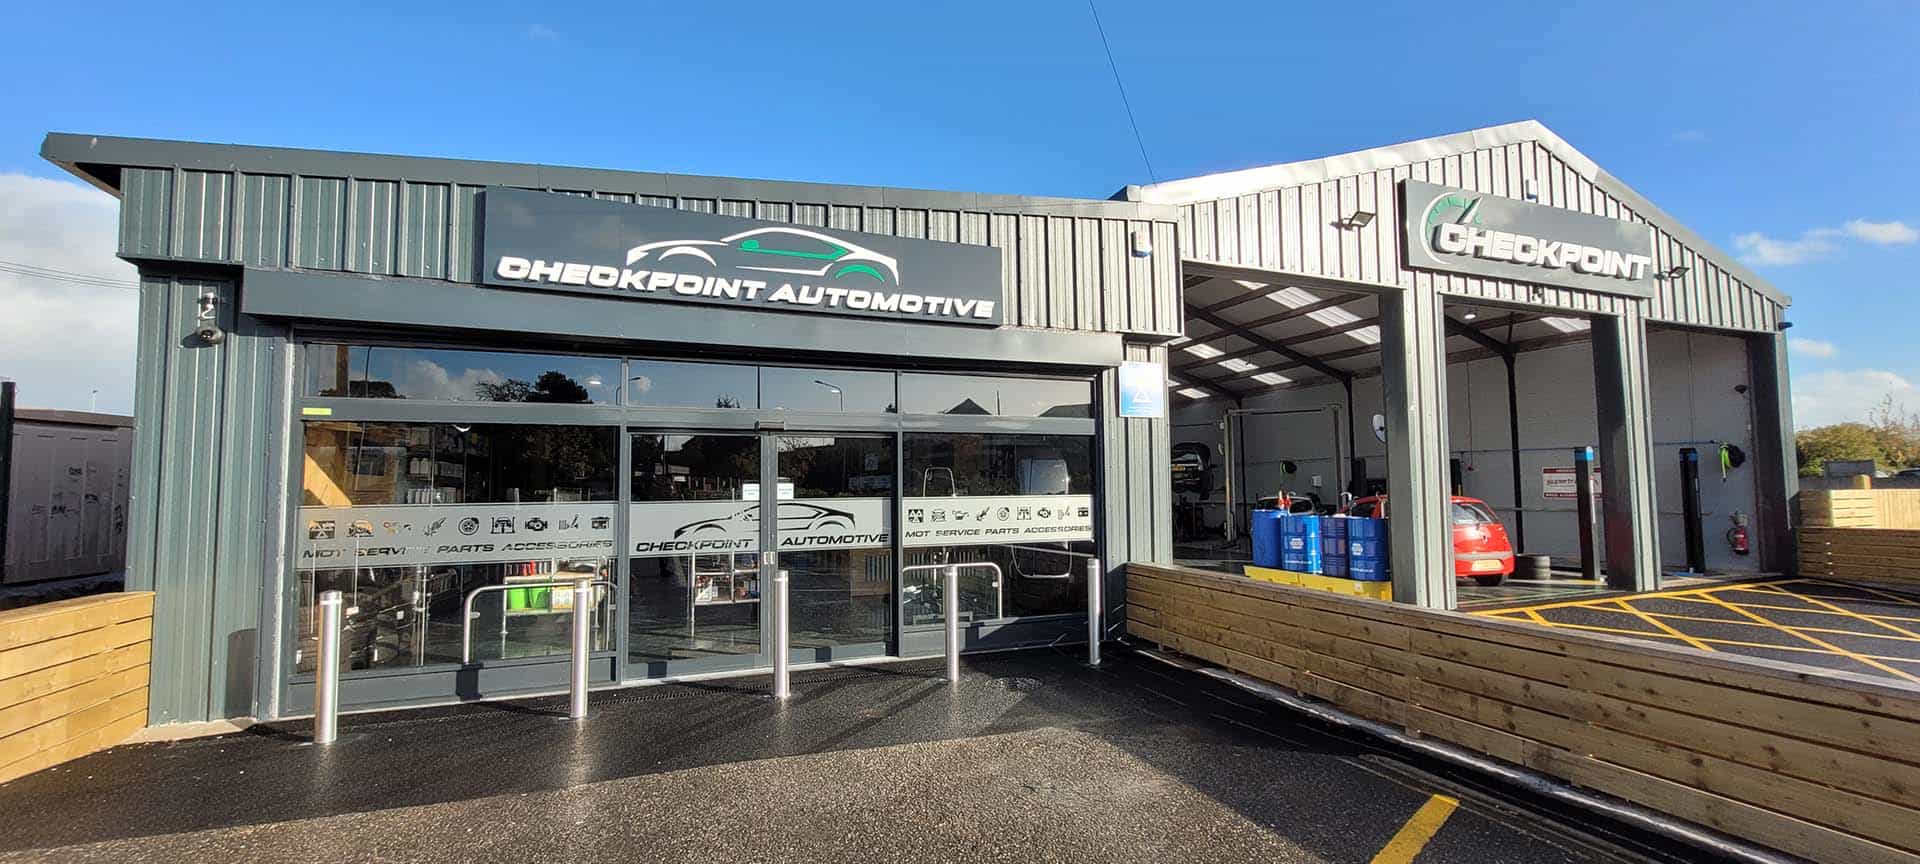 Checkpoint Automotive building in Mold Flintshire